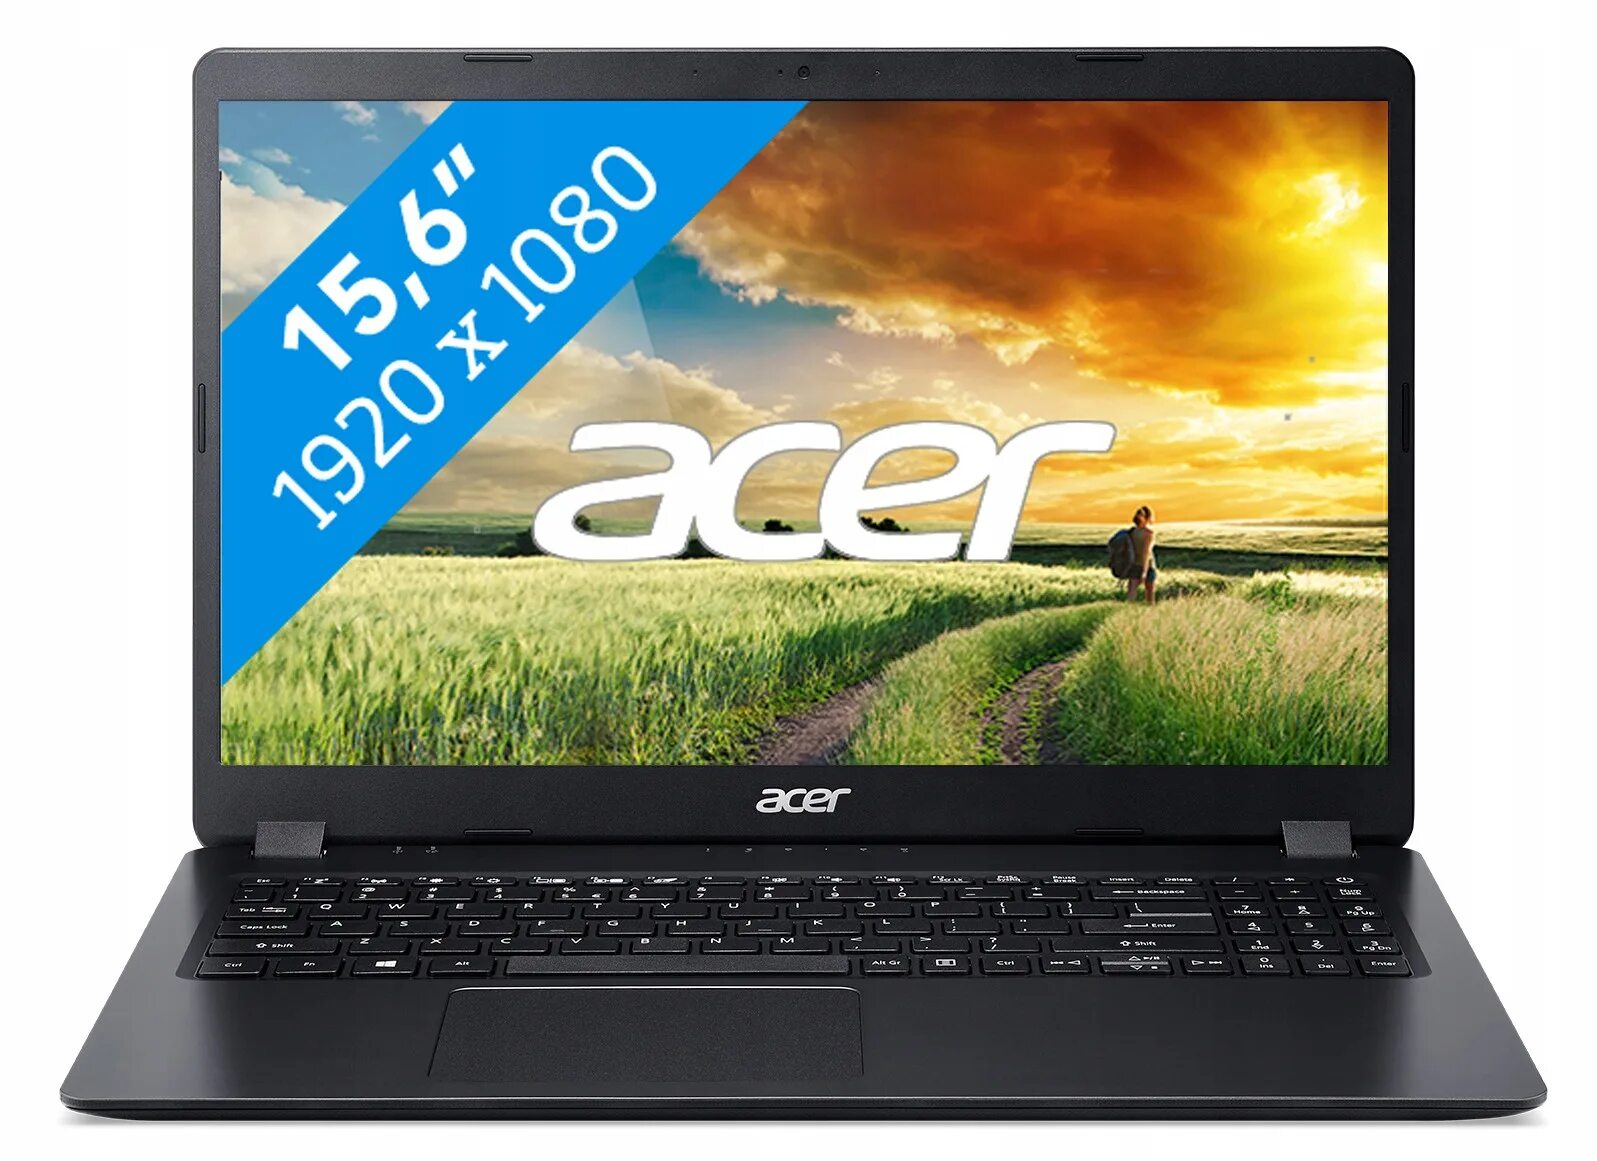 Acer Aspire 3 a317-52. Acer Aspire 5 a517. Ноутбук Acer Aspire 5 a517-52-51dr. Acer a315-31.